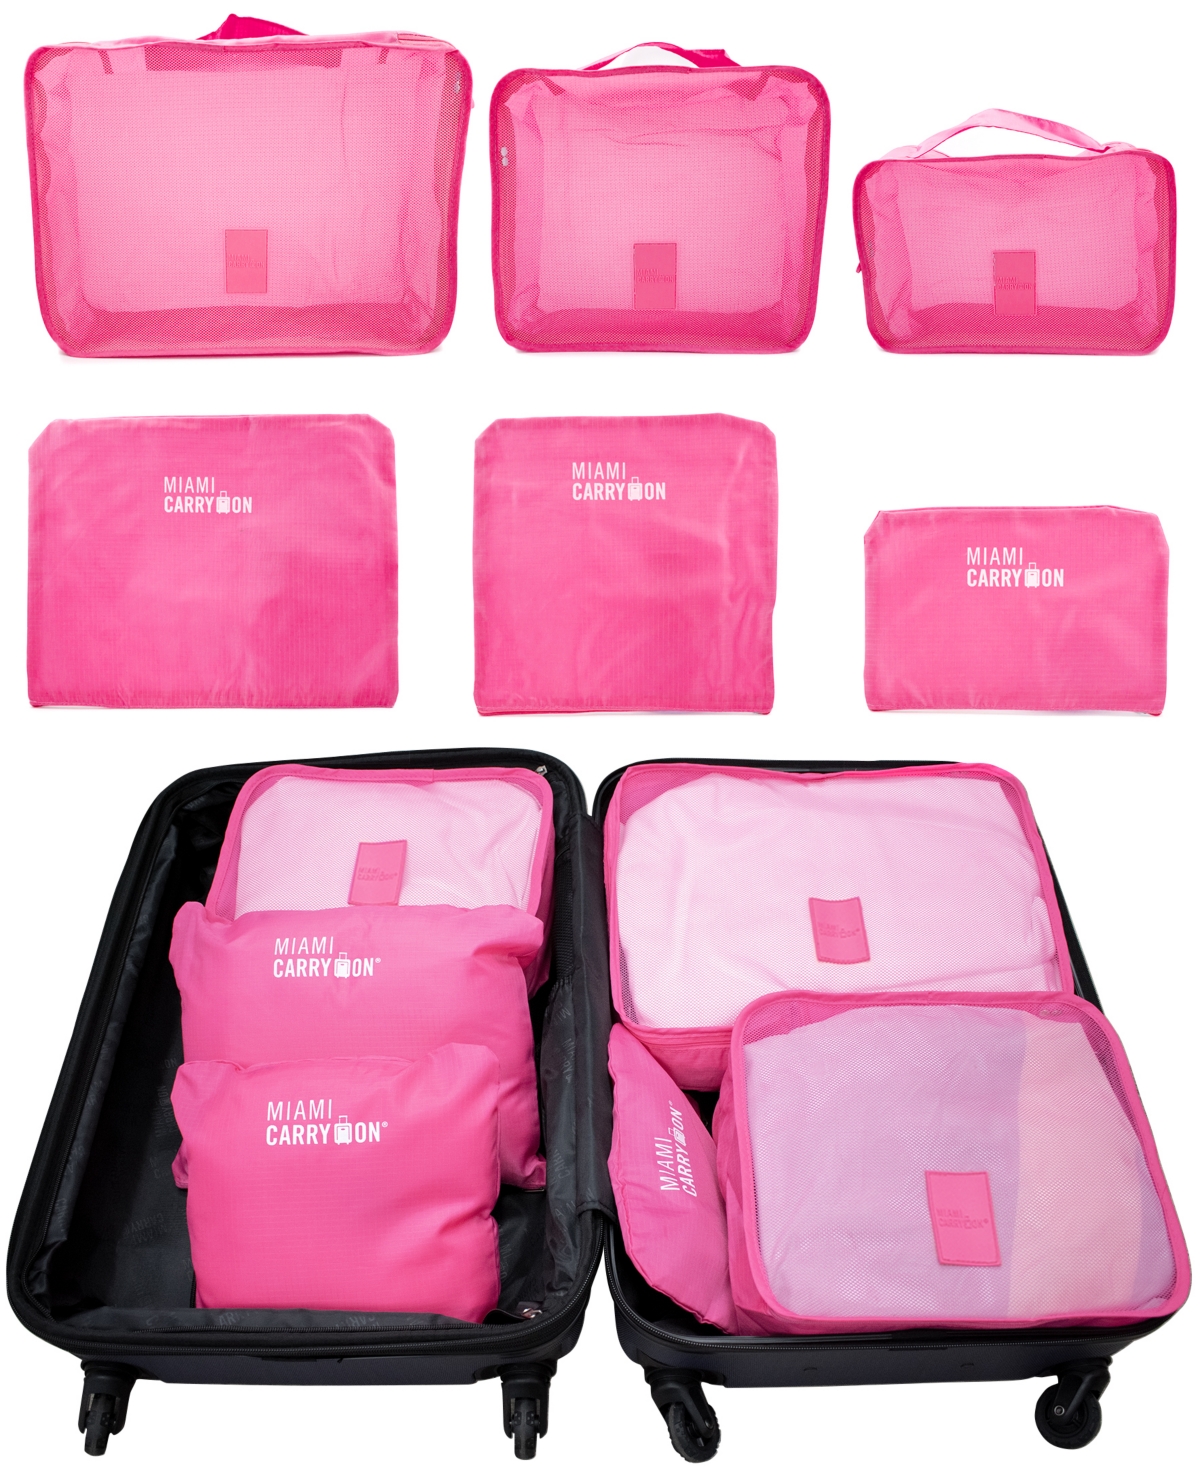 Set of 6 Neon Packing Cubes, Traveler's Luggage Organizer - Green